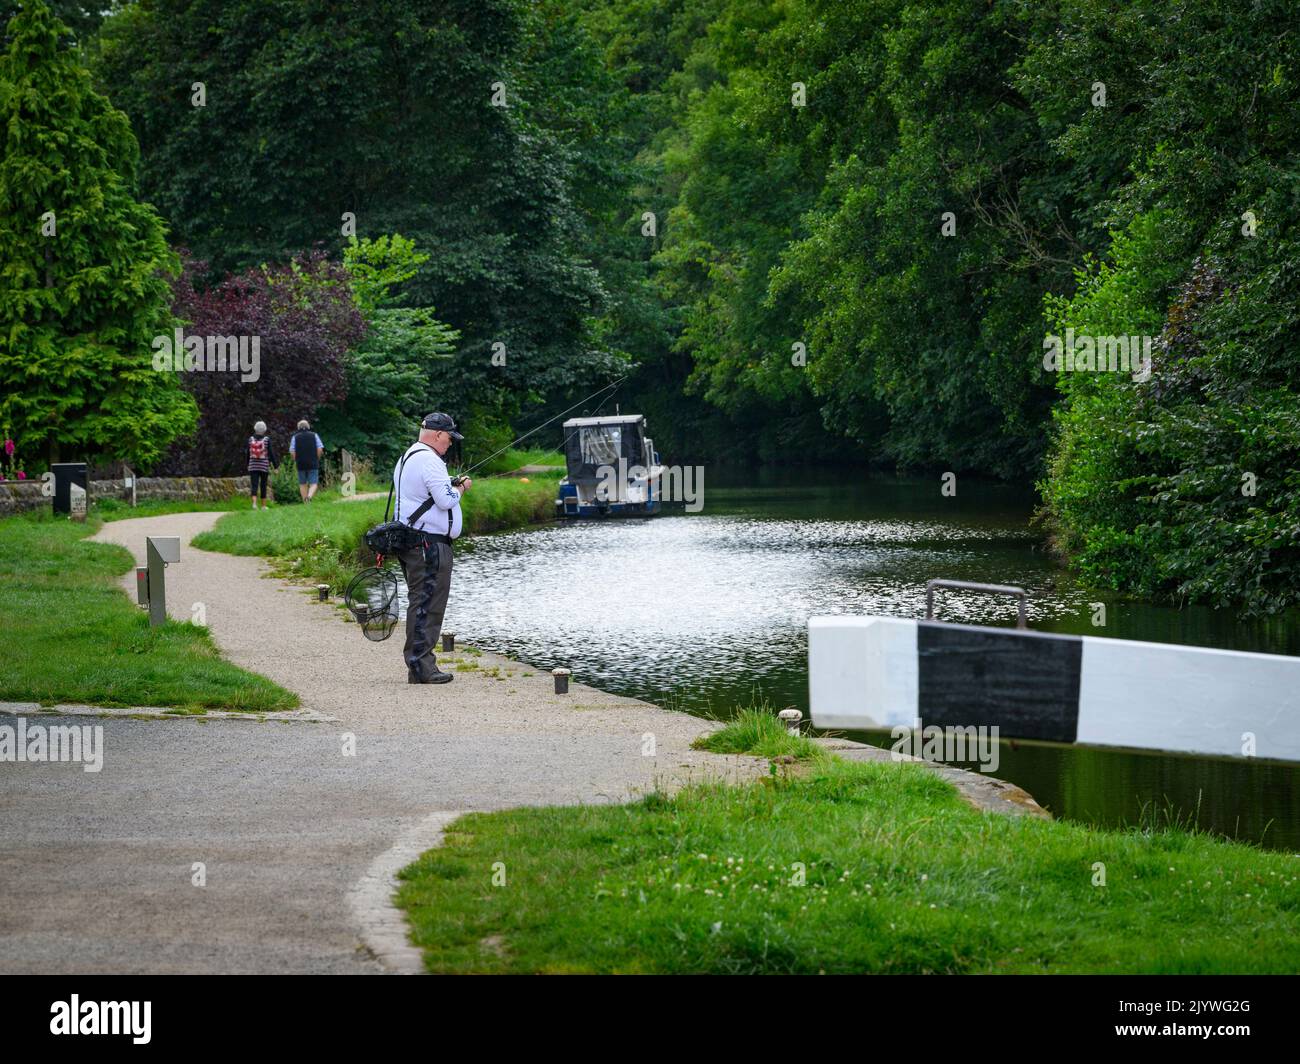 Activités de loisirs relaxantes pour les personnes à proximité du pittoresque canal de Leeds et Liverpool (marcheurs, pêche à la ligne) - Gargrave, North Yorkshire, Angleterre, Royaume-Uni. Banque D'Images